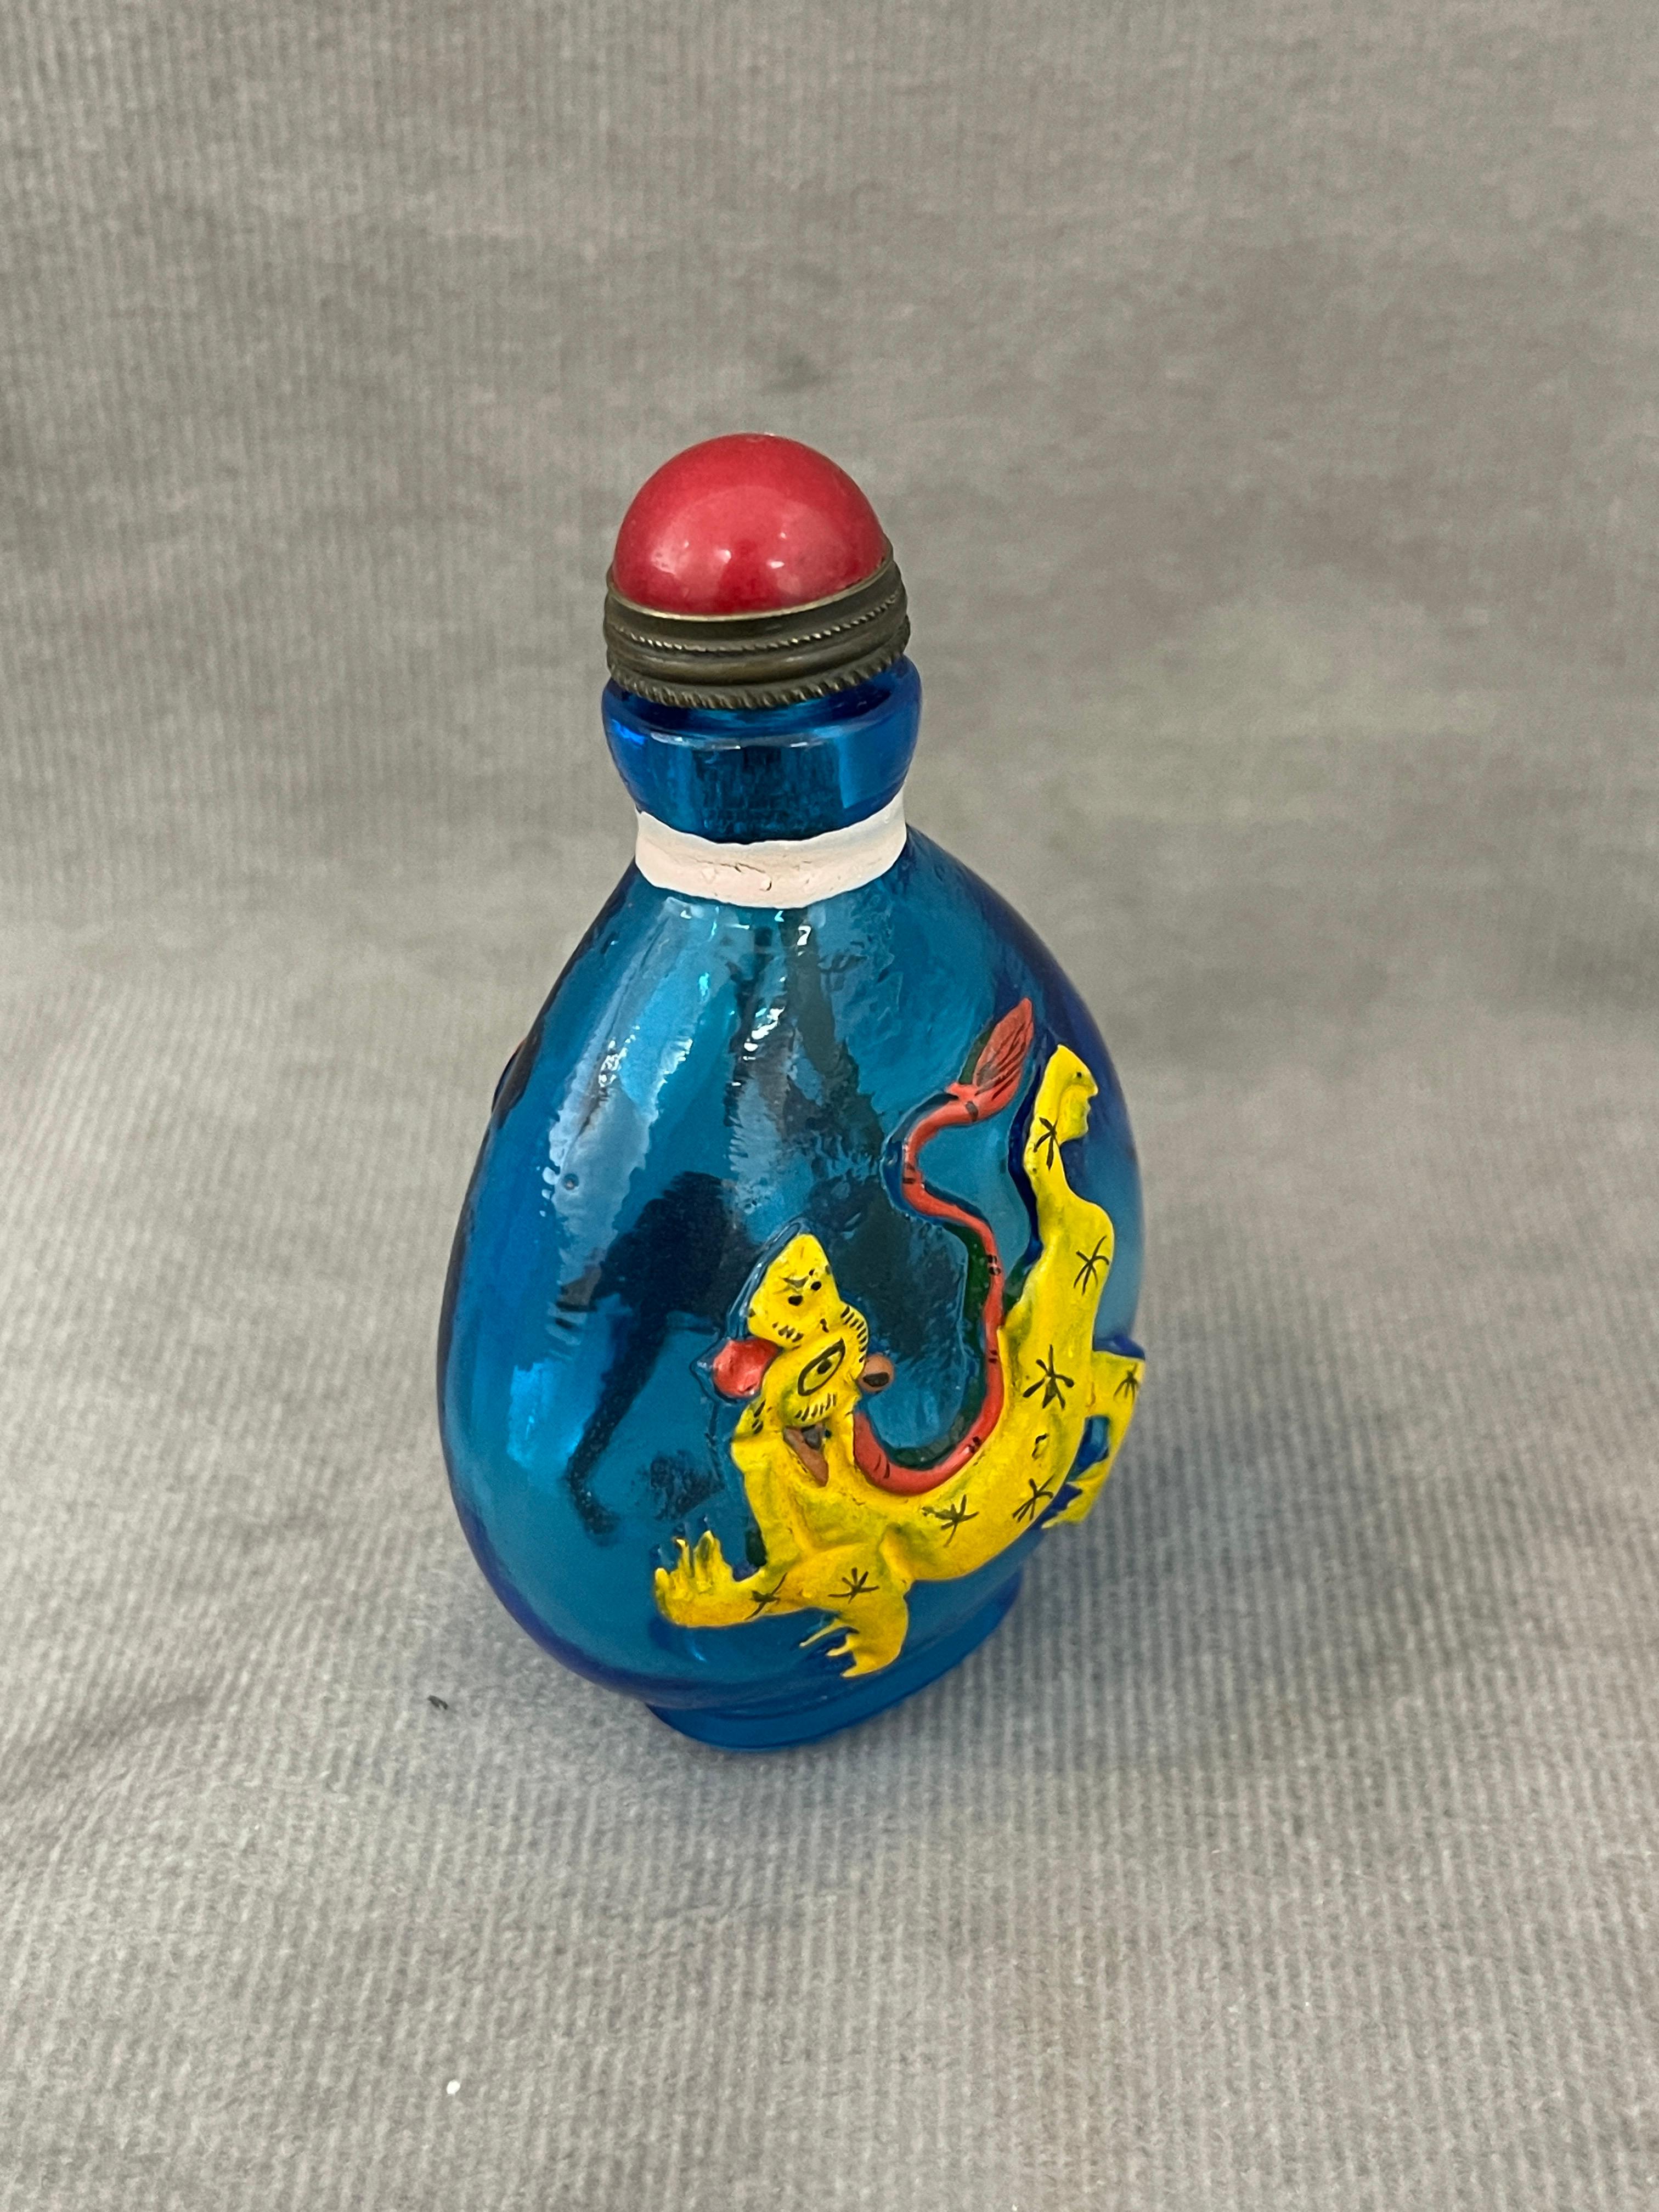 Chinese Peking Glass Snuff Bottle Signed